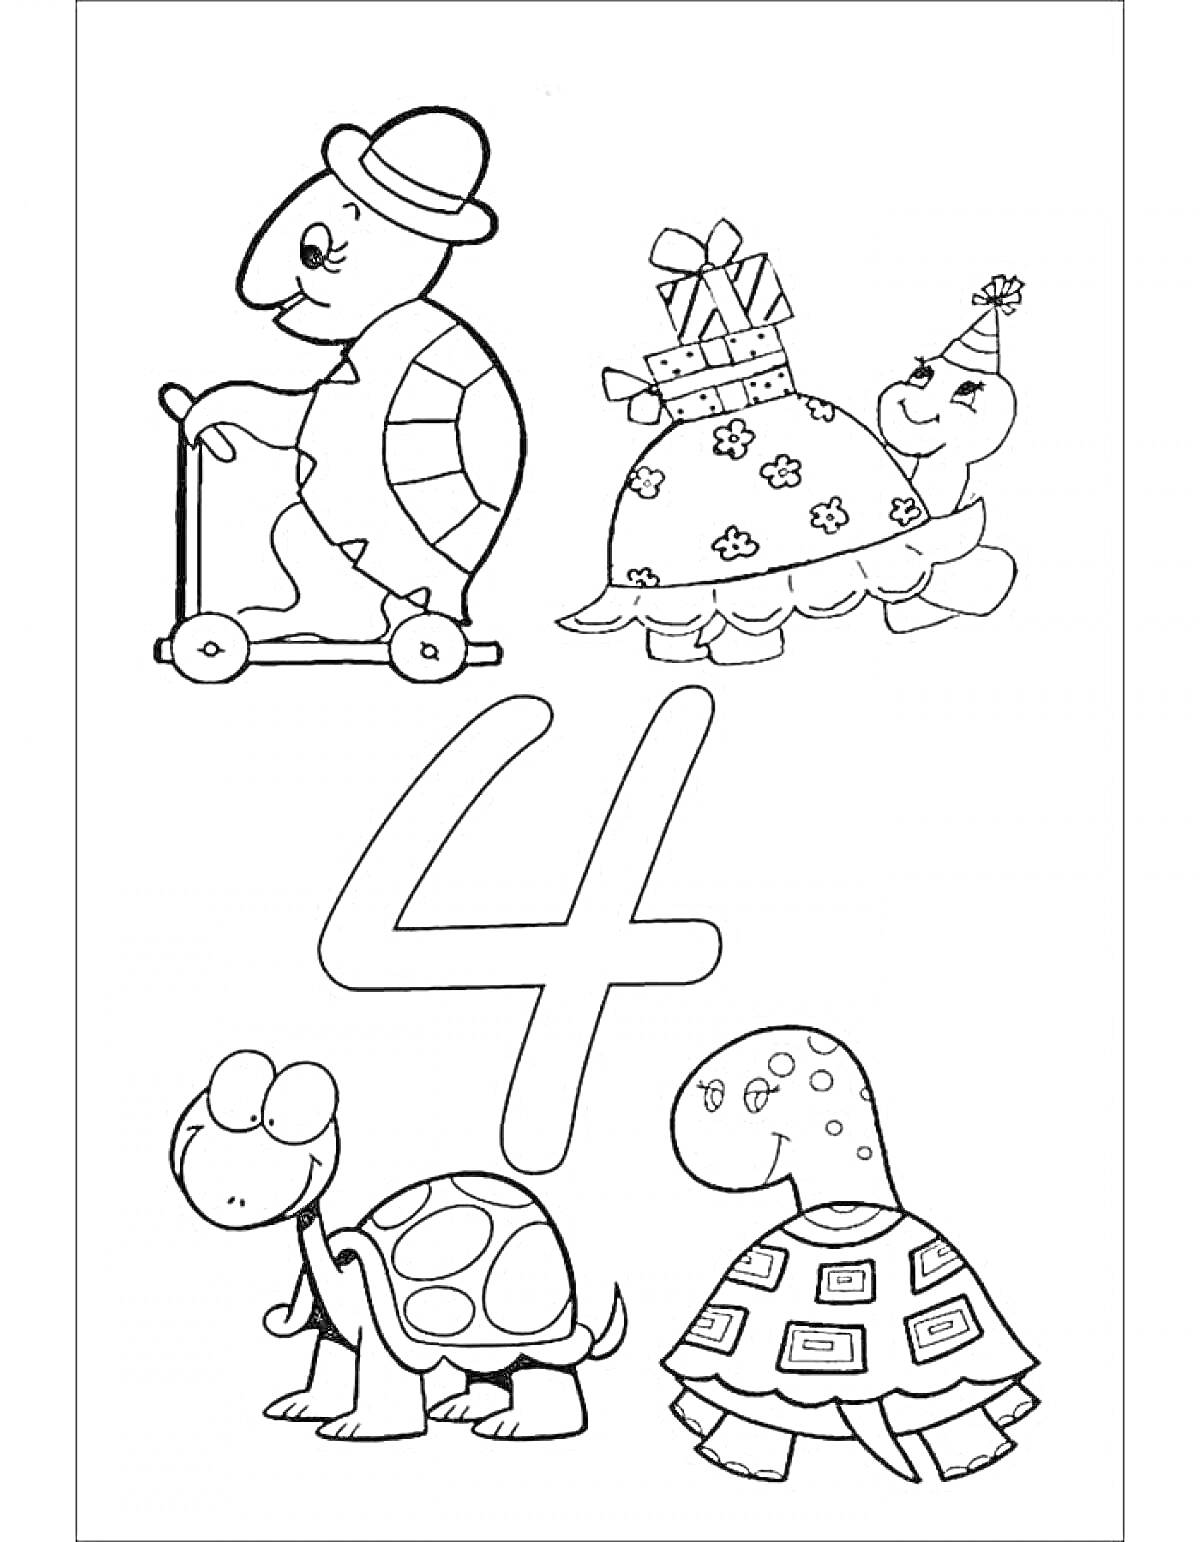 Раскраска Цифра 4 с черепахами, одна едет на самокате, другая с подарками и праздничным колпачком, третья и четвертая просто ходят